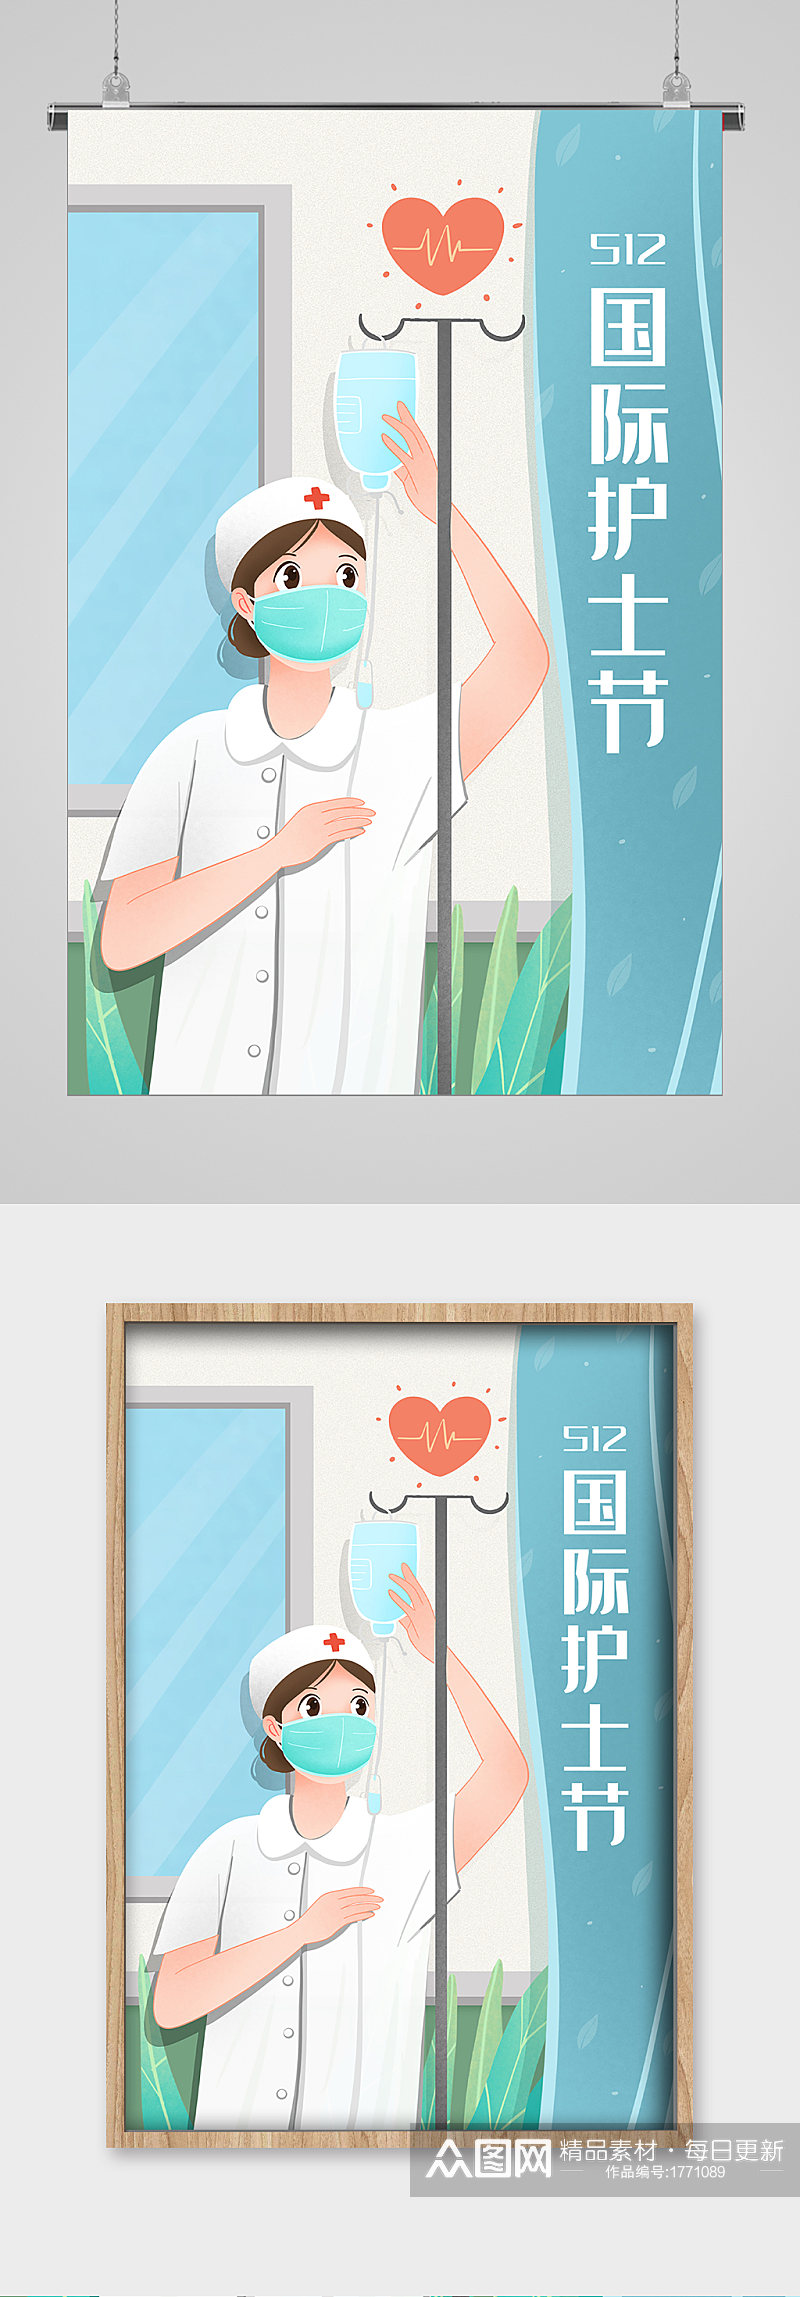 吊盐水的护士512护士节宣传插画素材